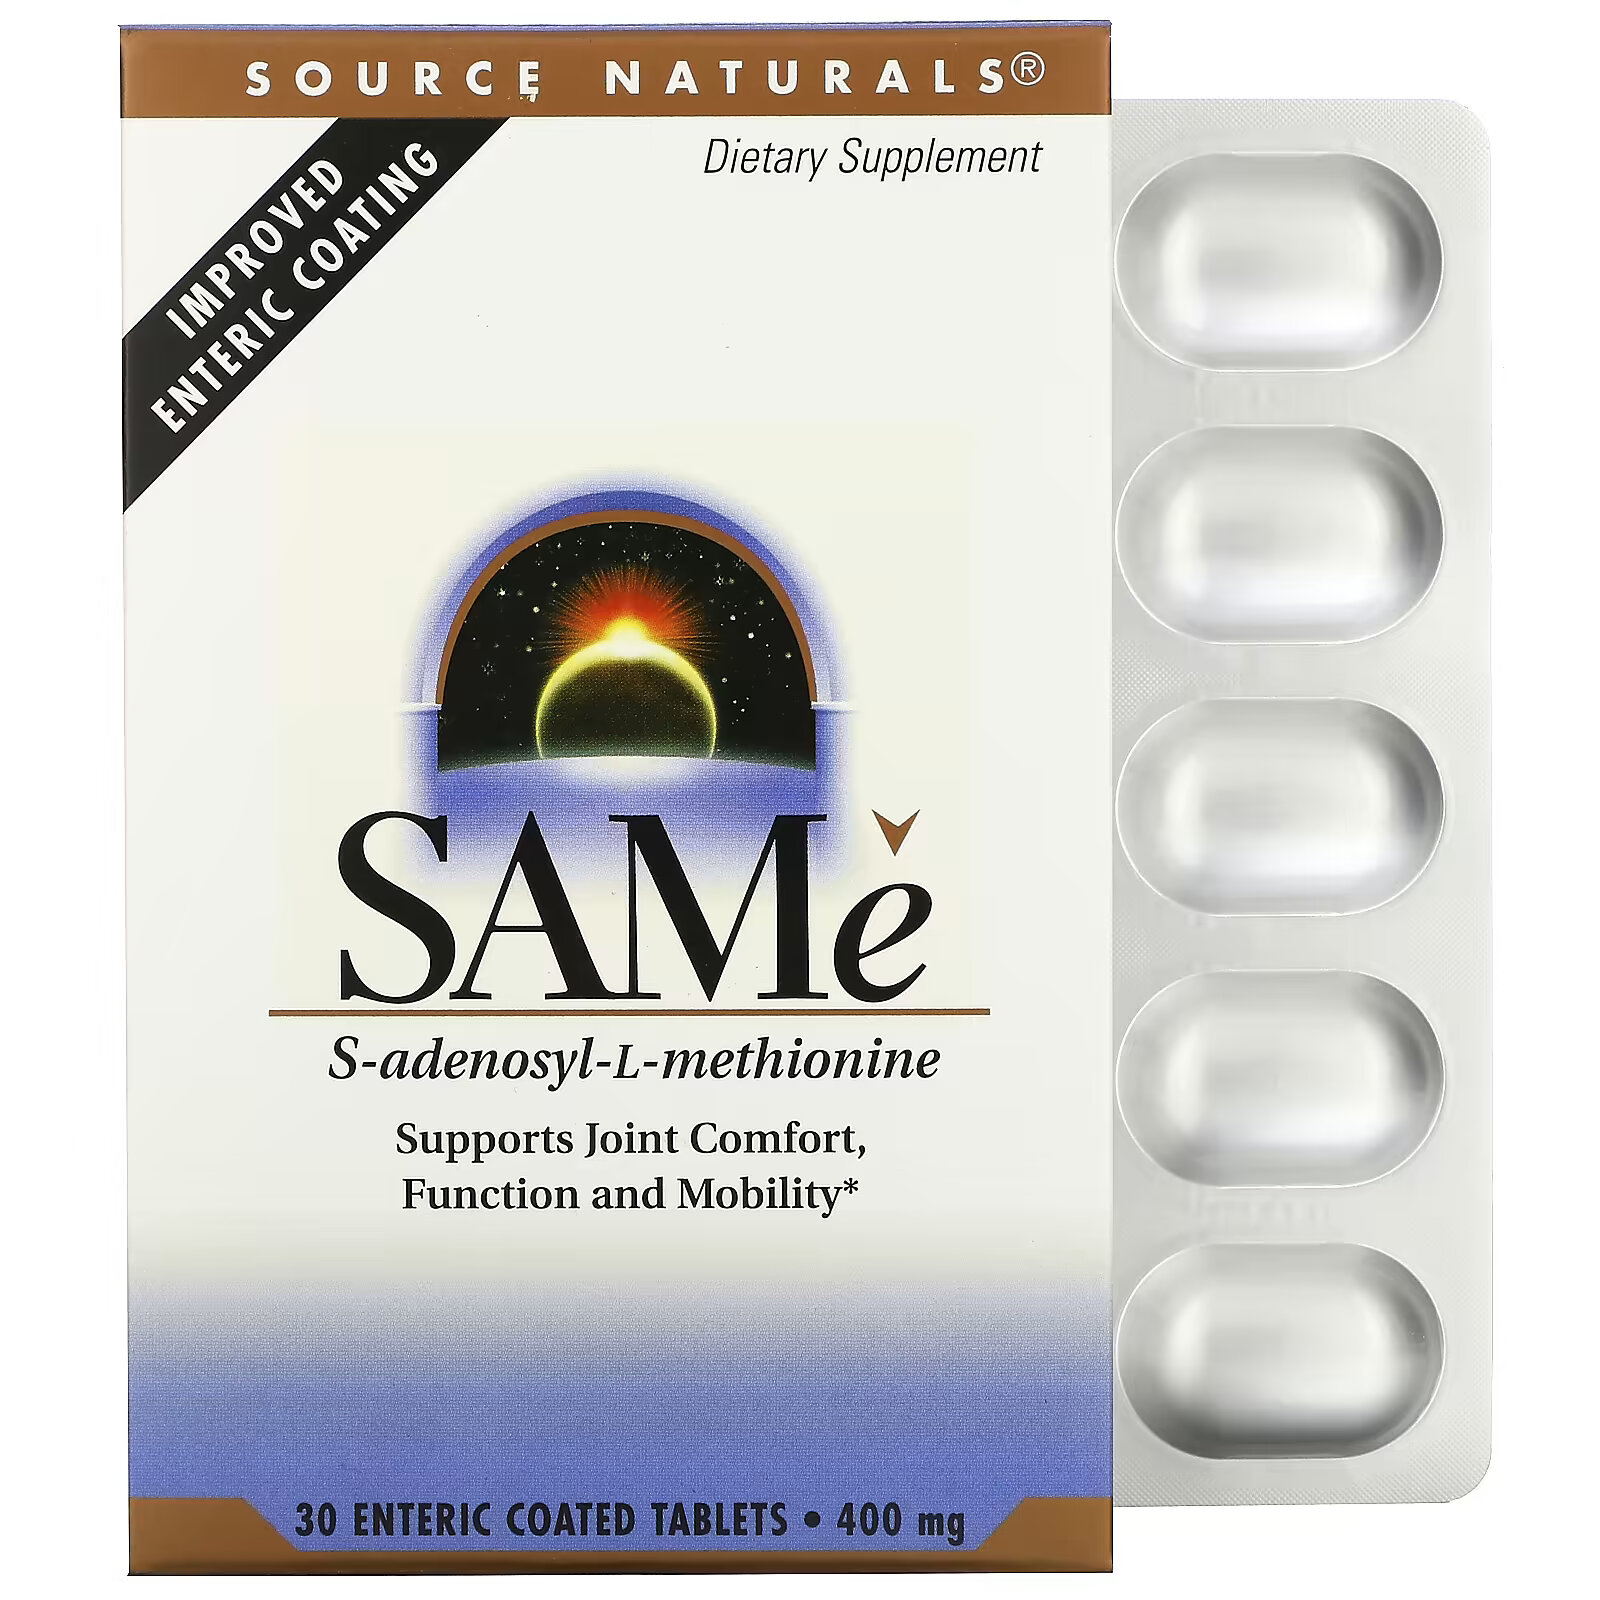 Source Naturals SAMe (дисульфат тозилат) 400 мг, 30 таблеток покрытых кишечнорастворимой оболочкой natural factors zymactive двойной силы 30 таблеток покрытых кишечнорастворимой оболочкой